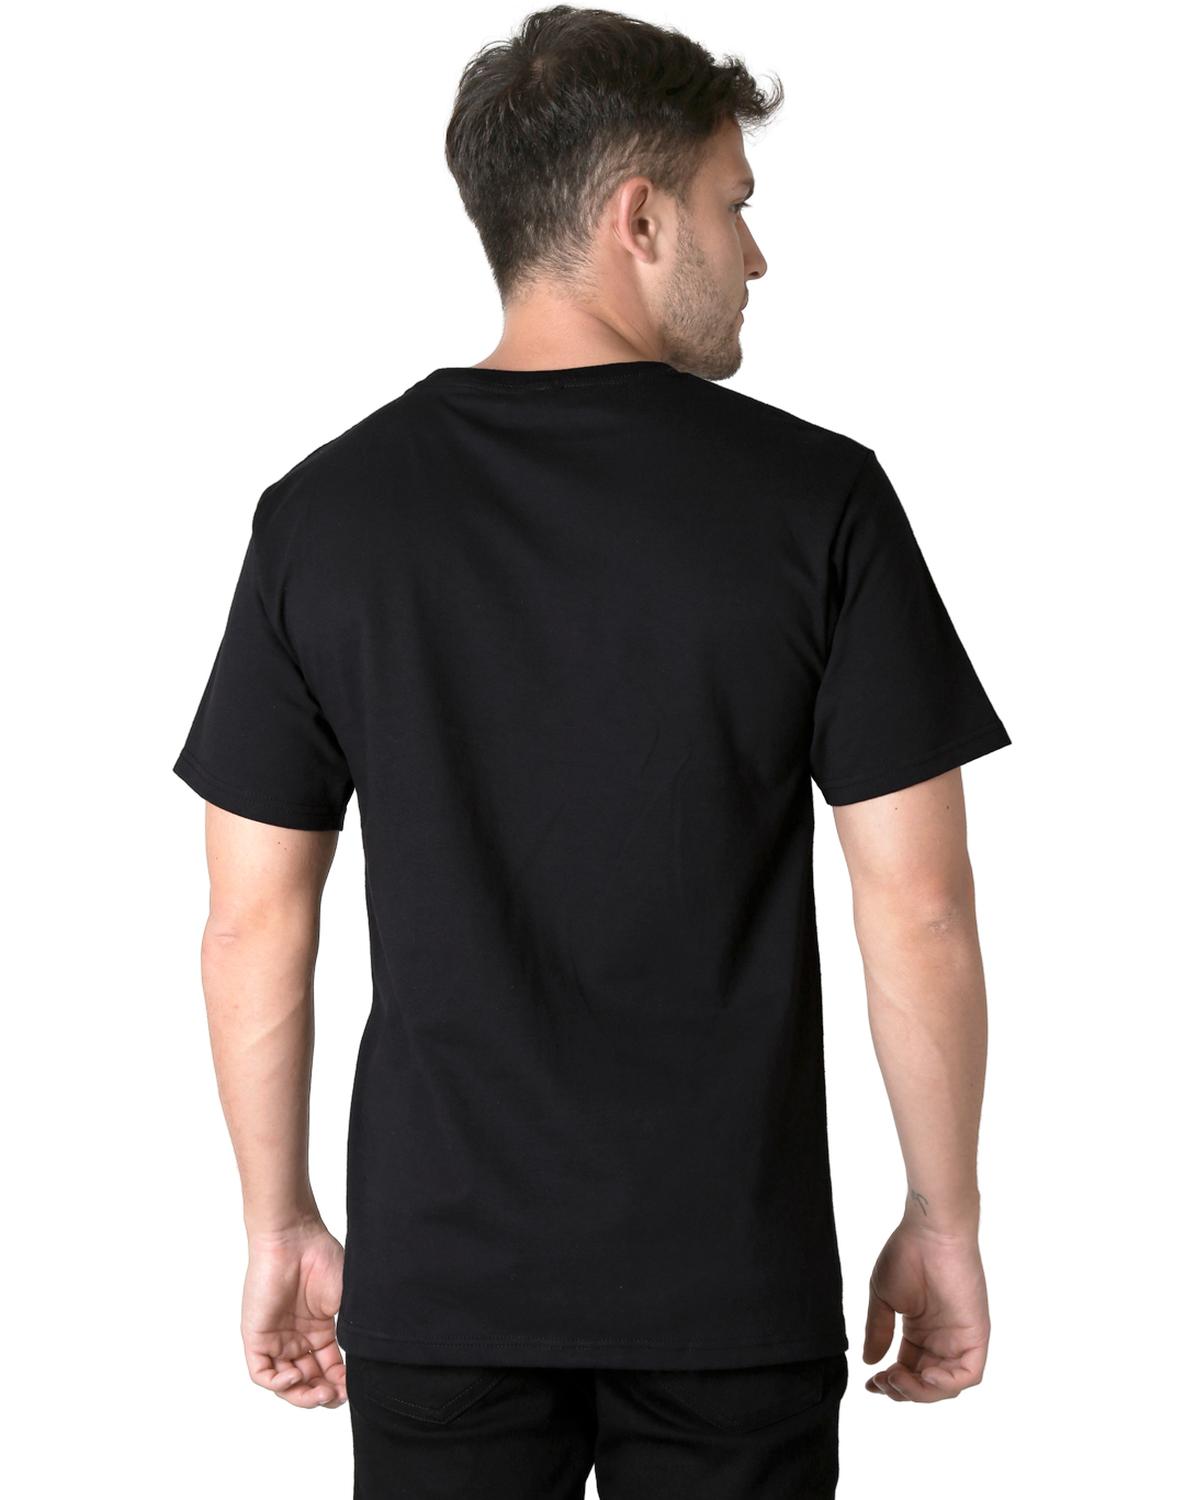 Playera Moda Camiseta Hombre Negro Toxic 51604611